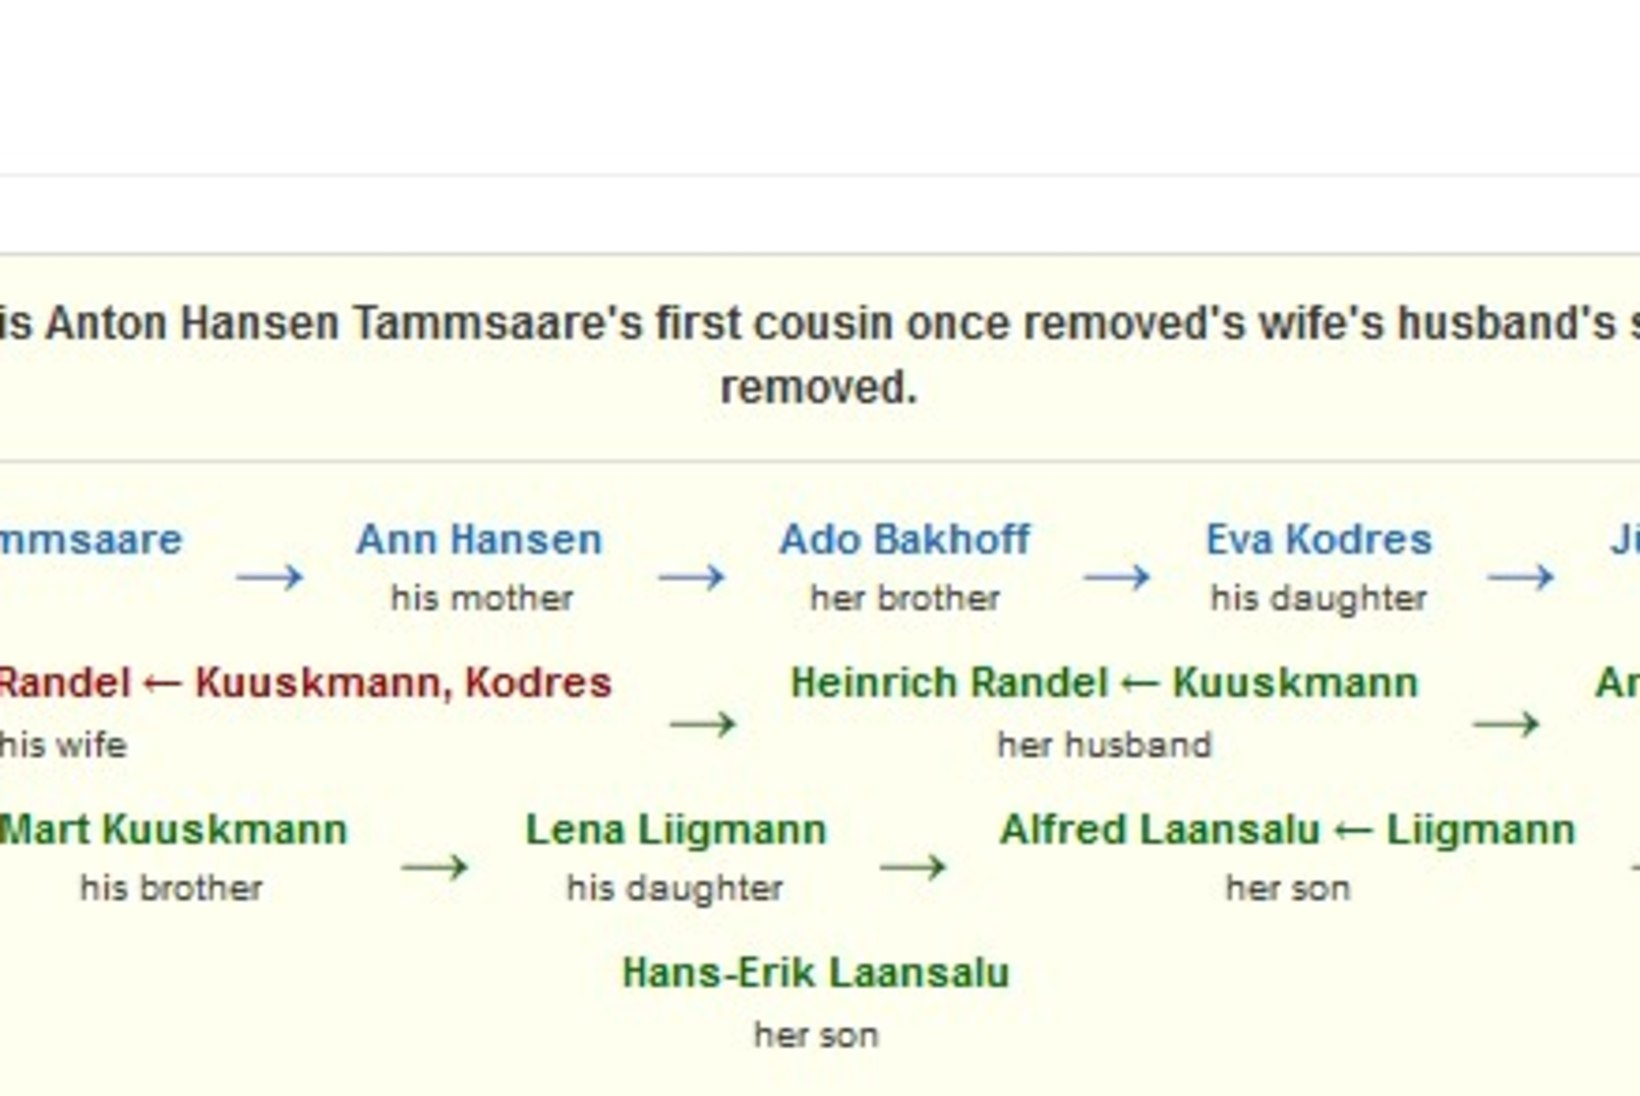 LOE JA IMESTA! Kuidas on praegused tuntud kirjanikud sugupuus Tammsaarega seotud?